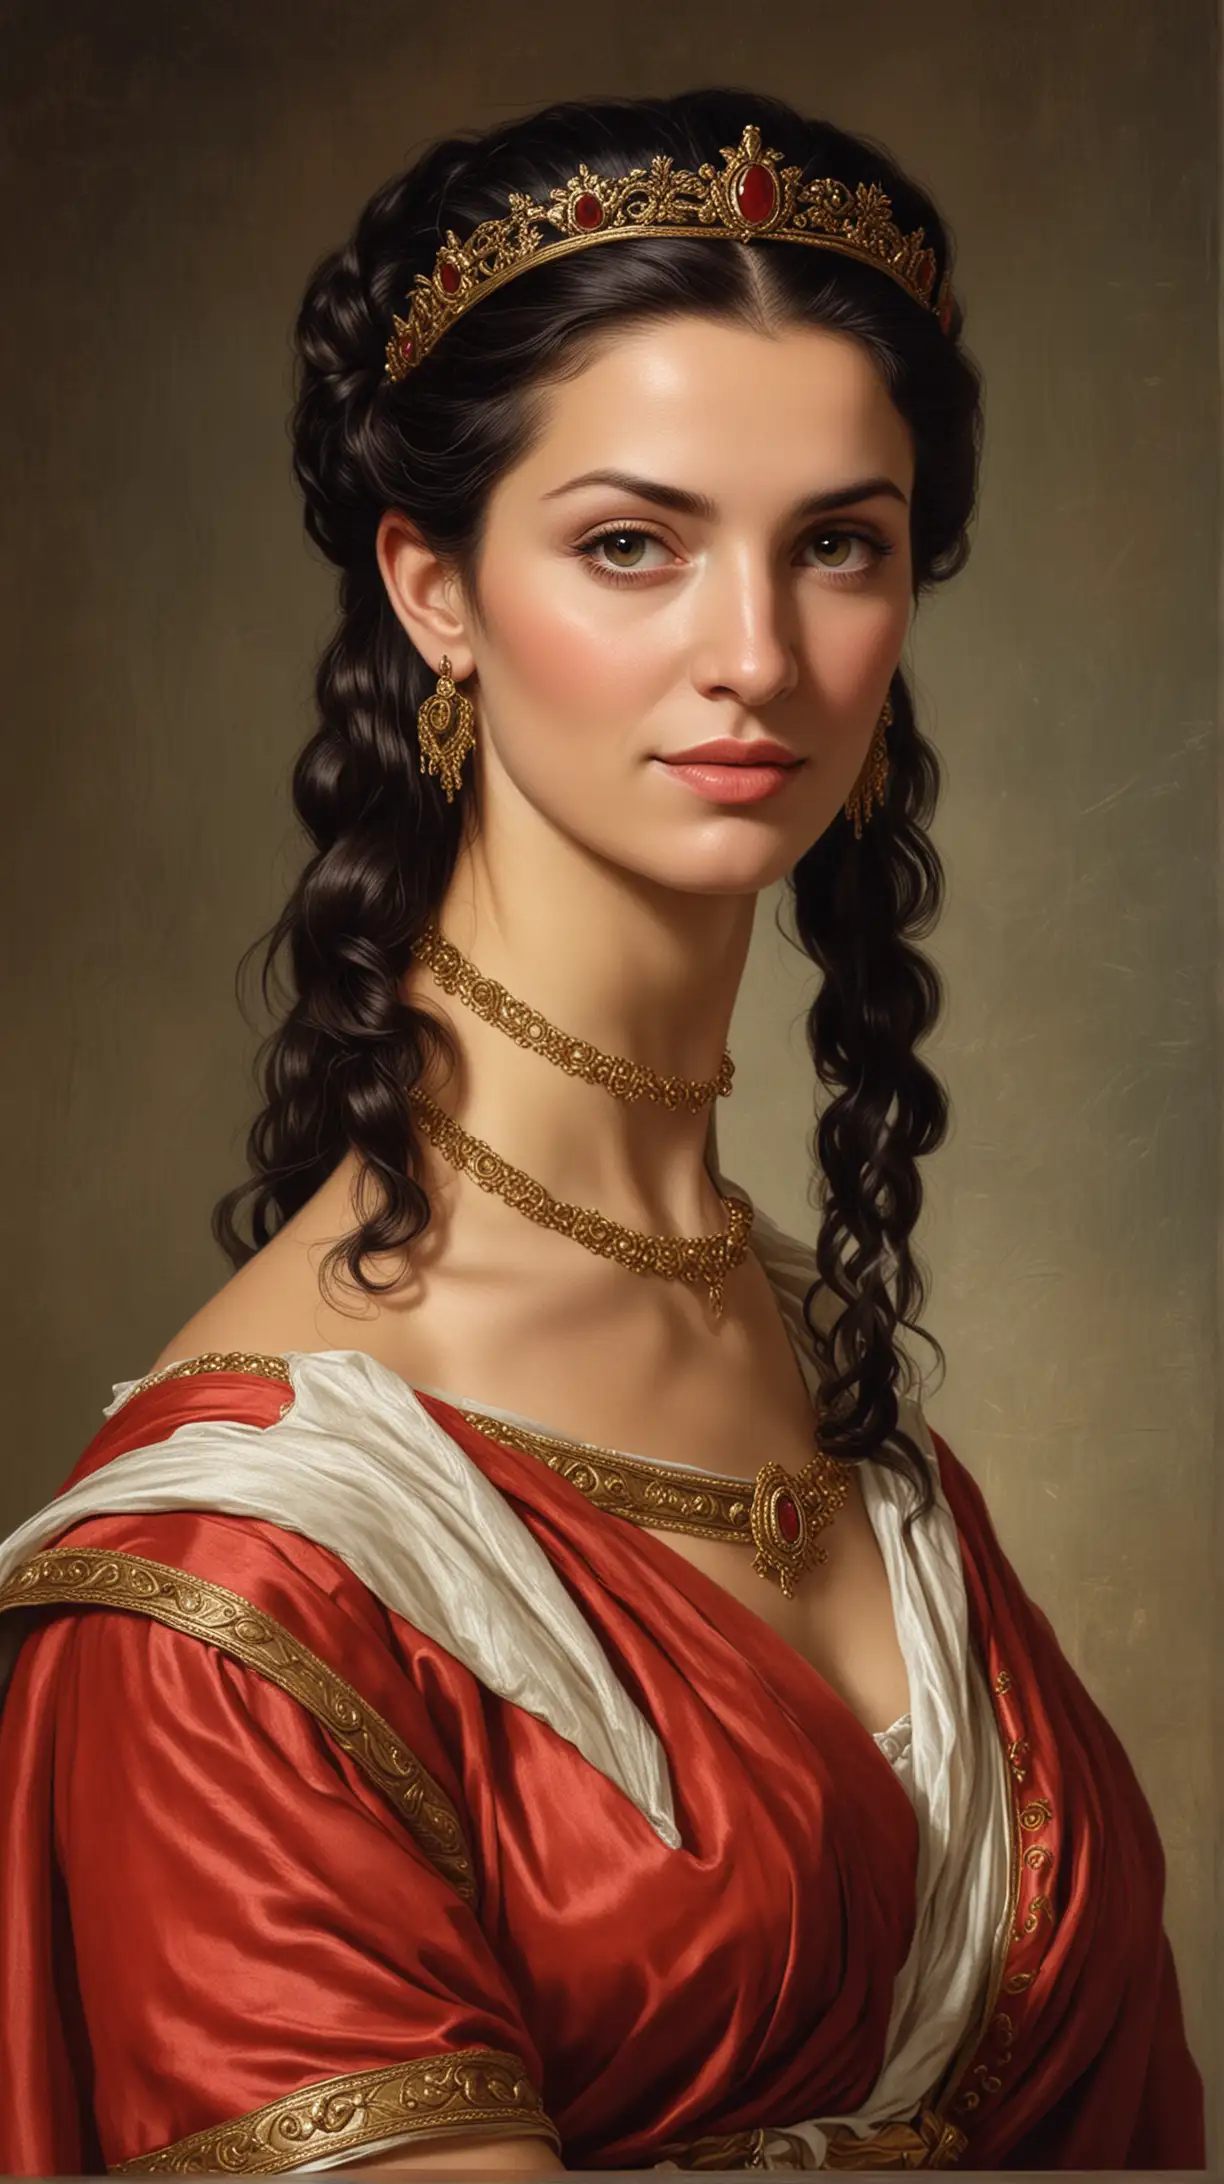 Ancient Roman Empress Livia Drusilla in Traditional Attire